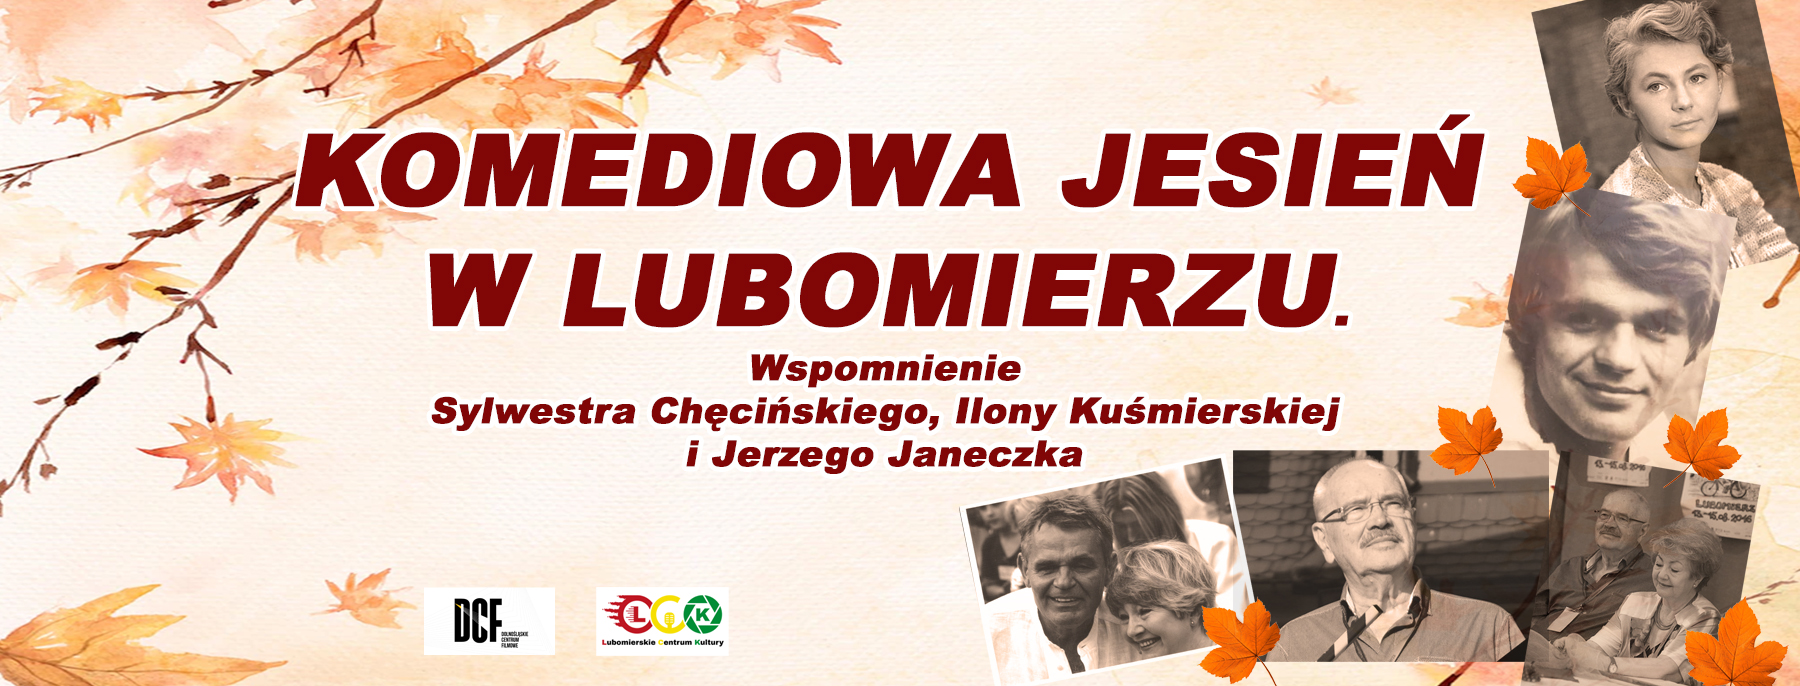 Komediowa Jesień w Lubomierzu